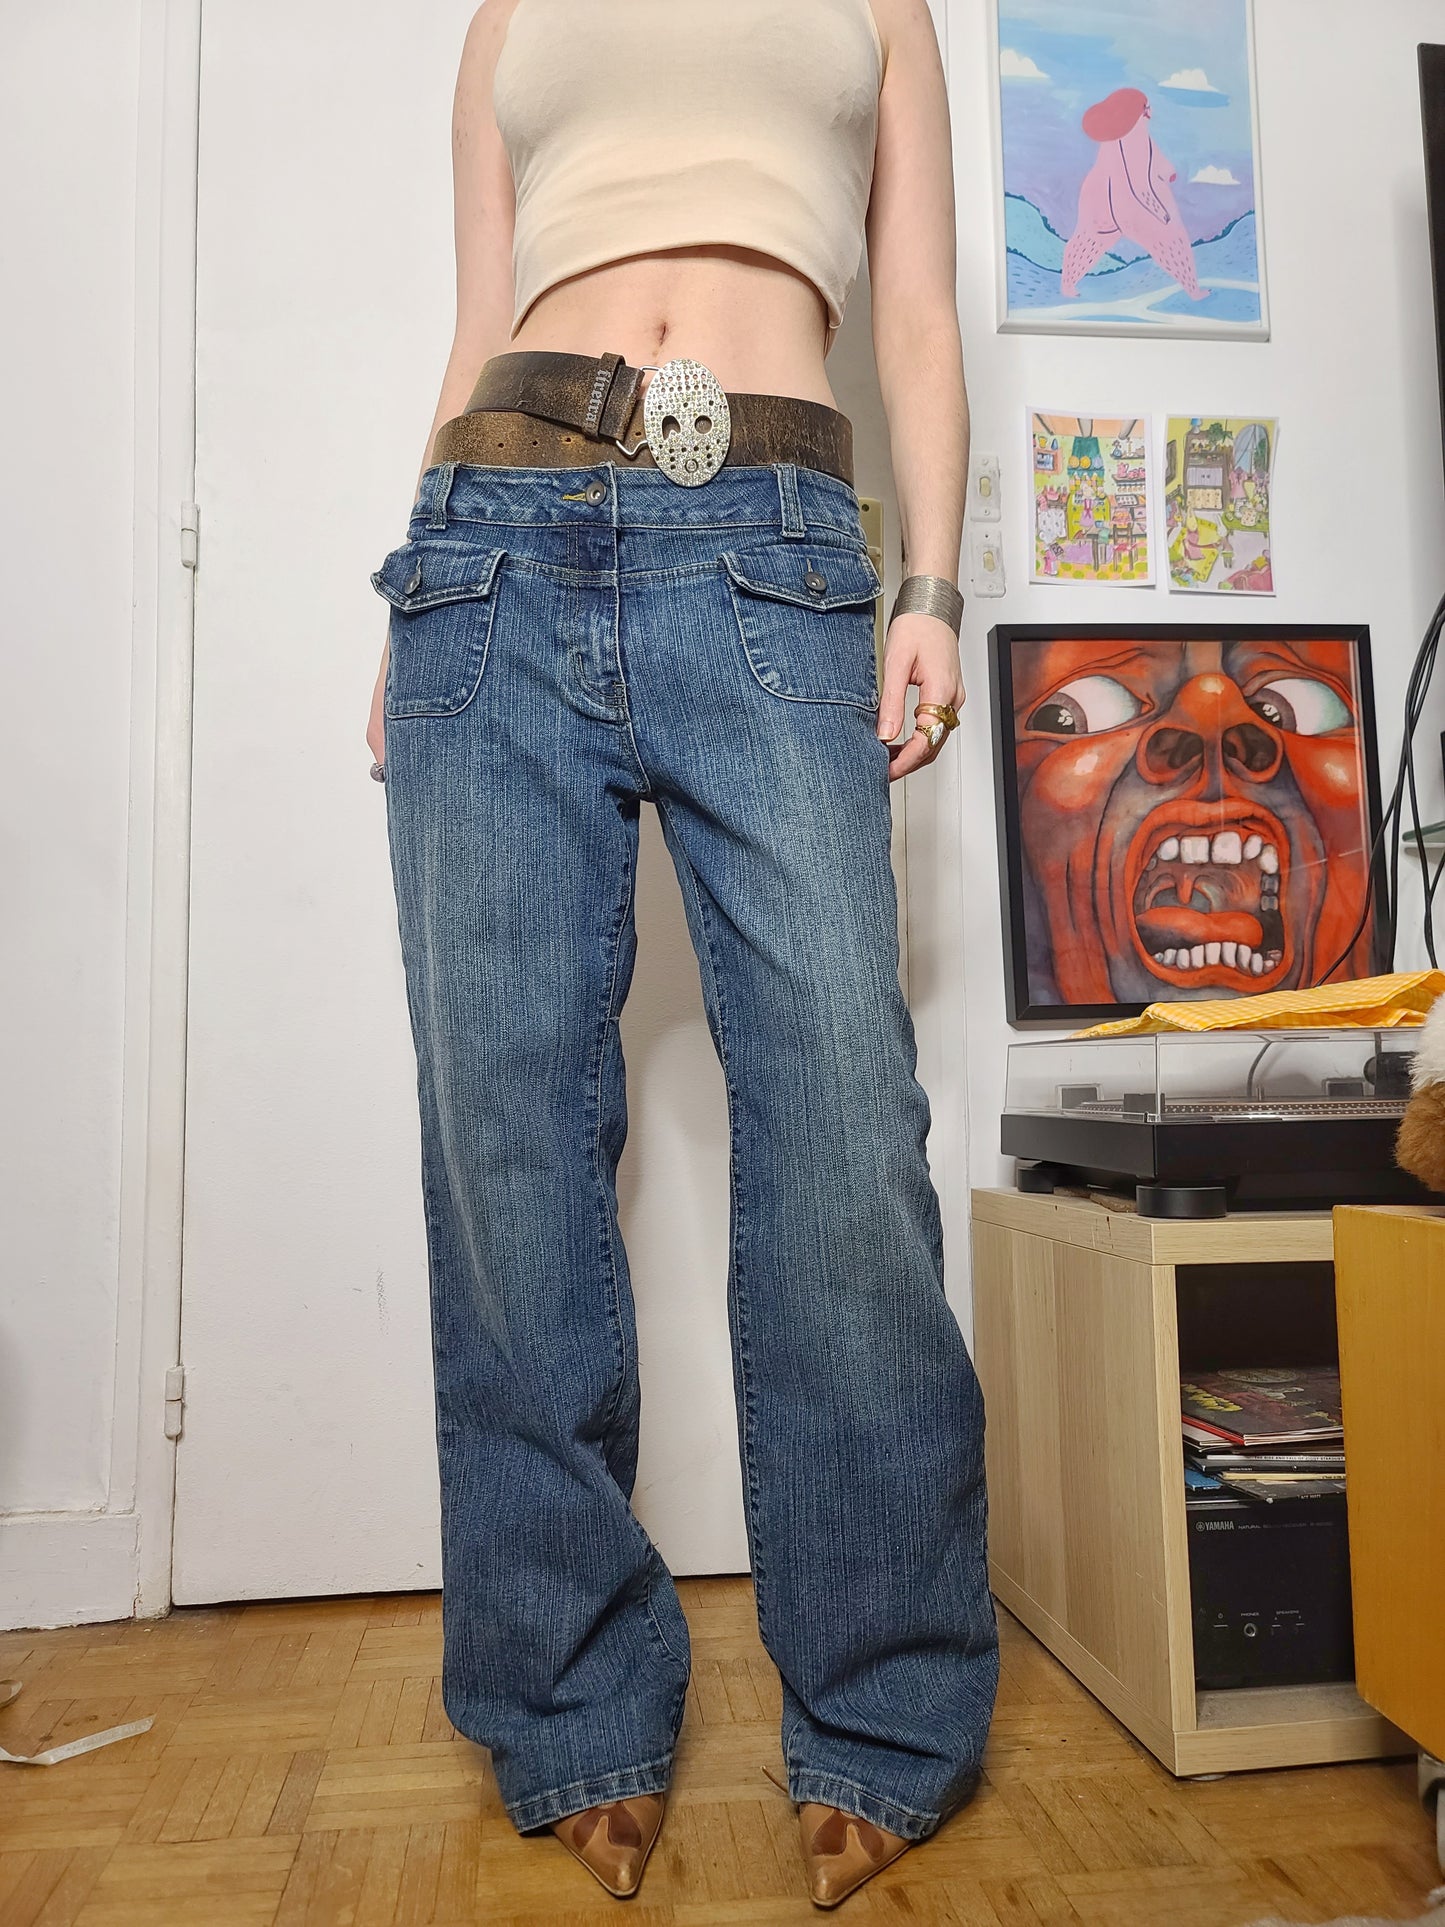 90s grunge denim overpants